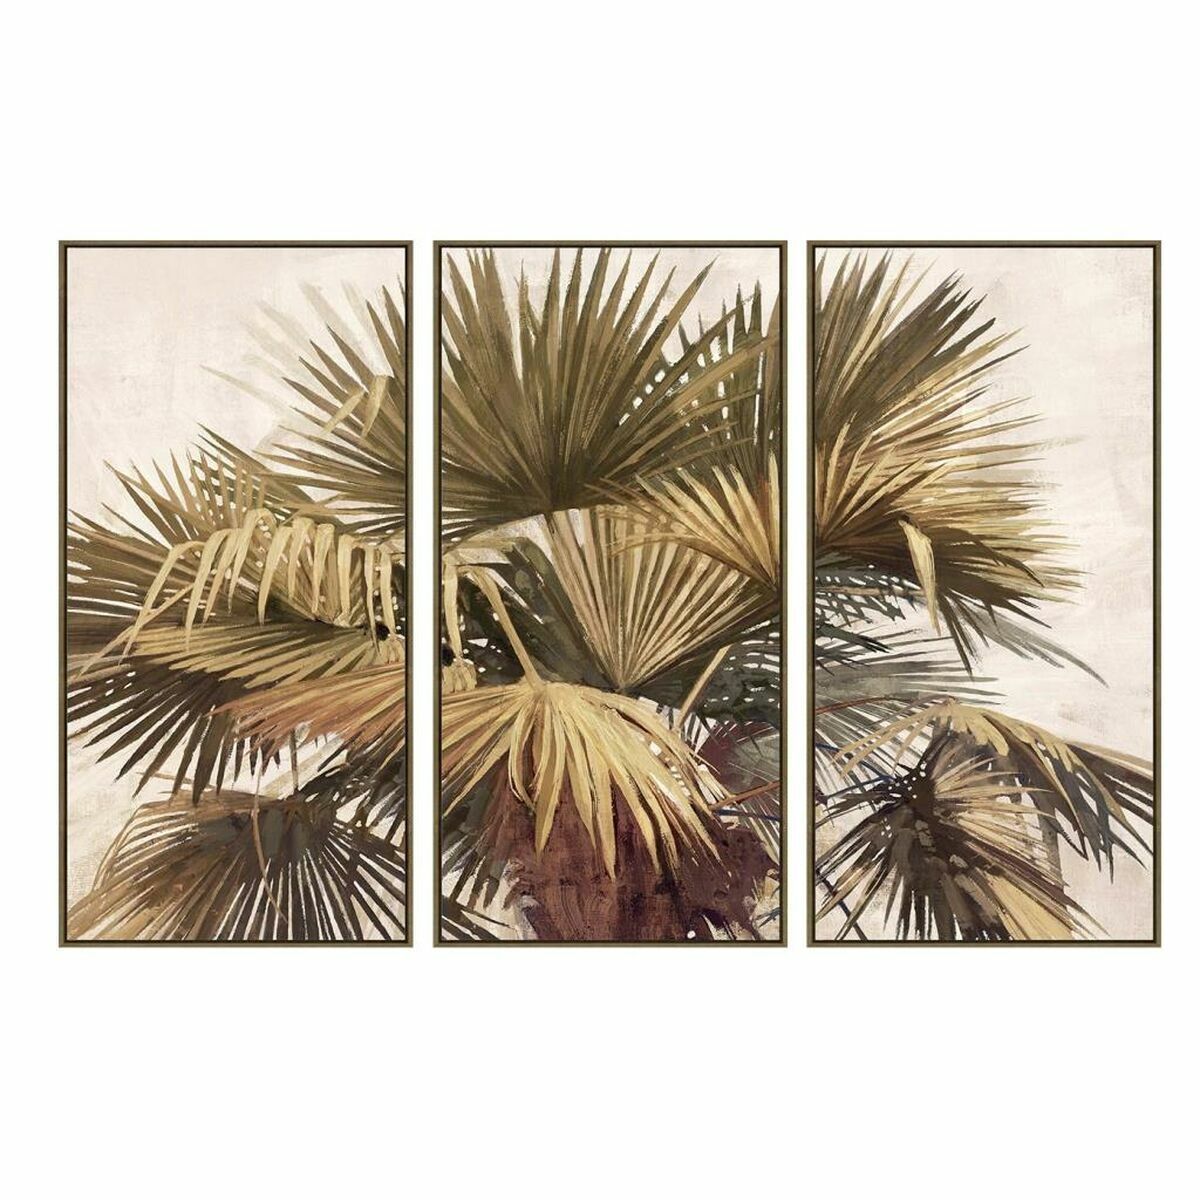  Ensemble de 3 Cadres Muraux Design Palmiers Vert, Jaune et Beige (180 x 4 x 120 cm)